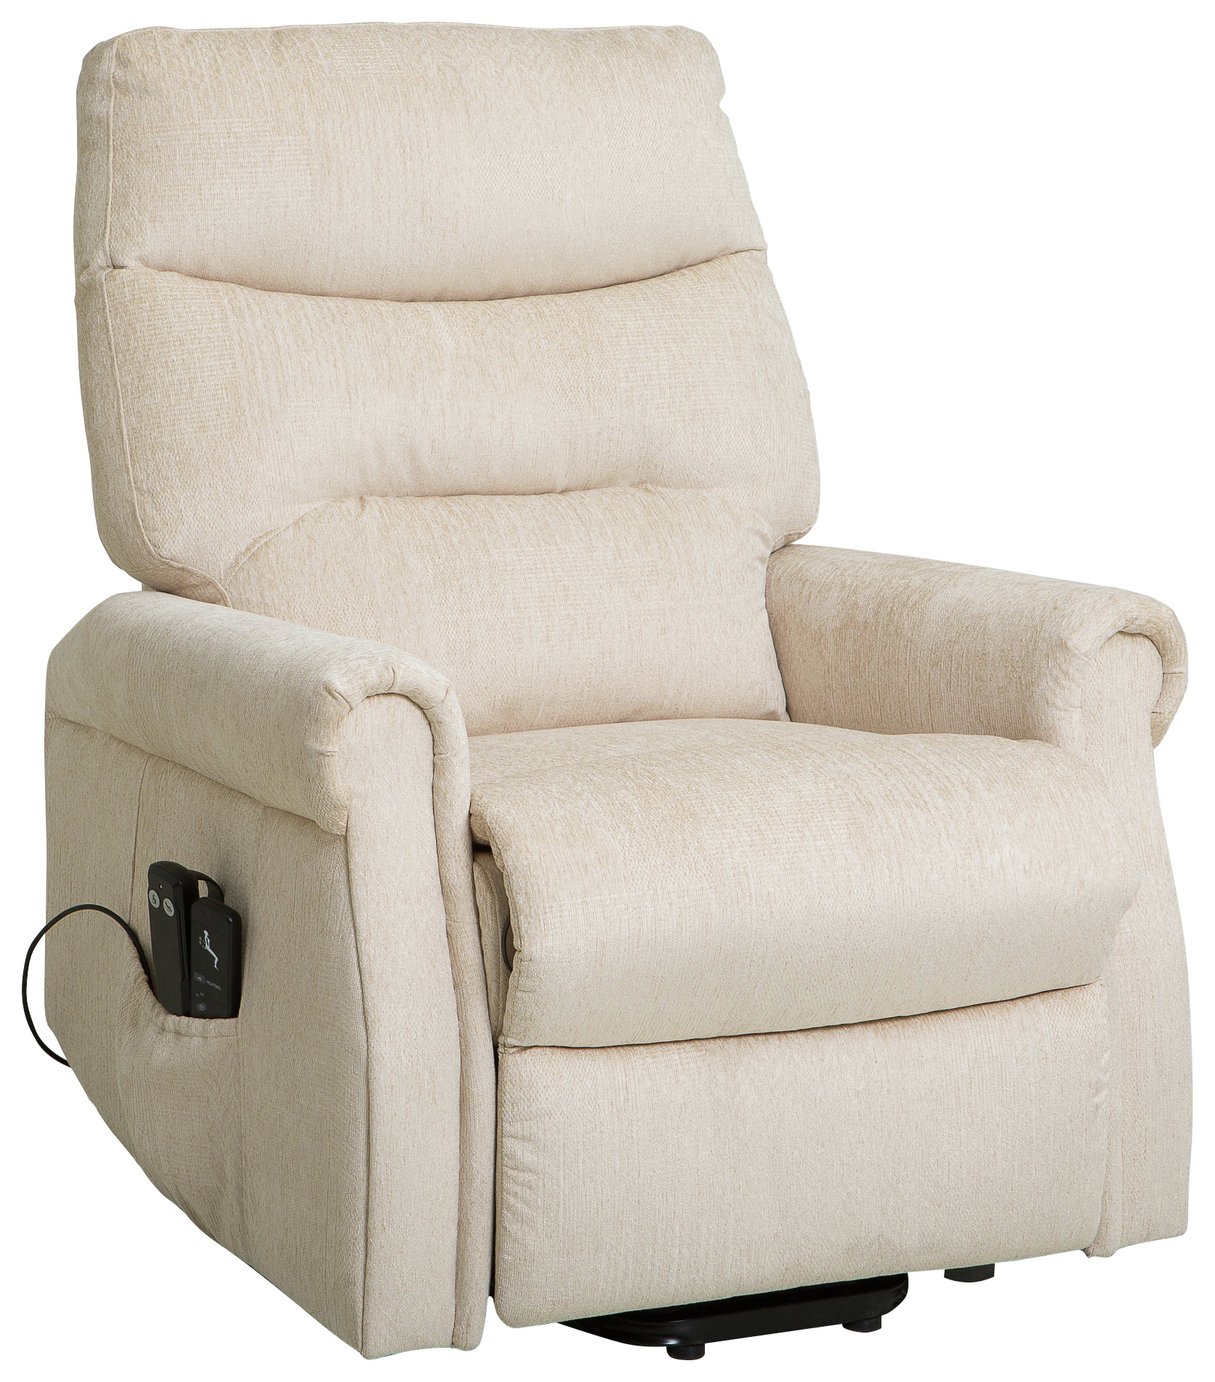 Argos Clarke Riser Recliner Heated Chair Reviews